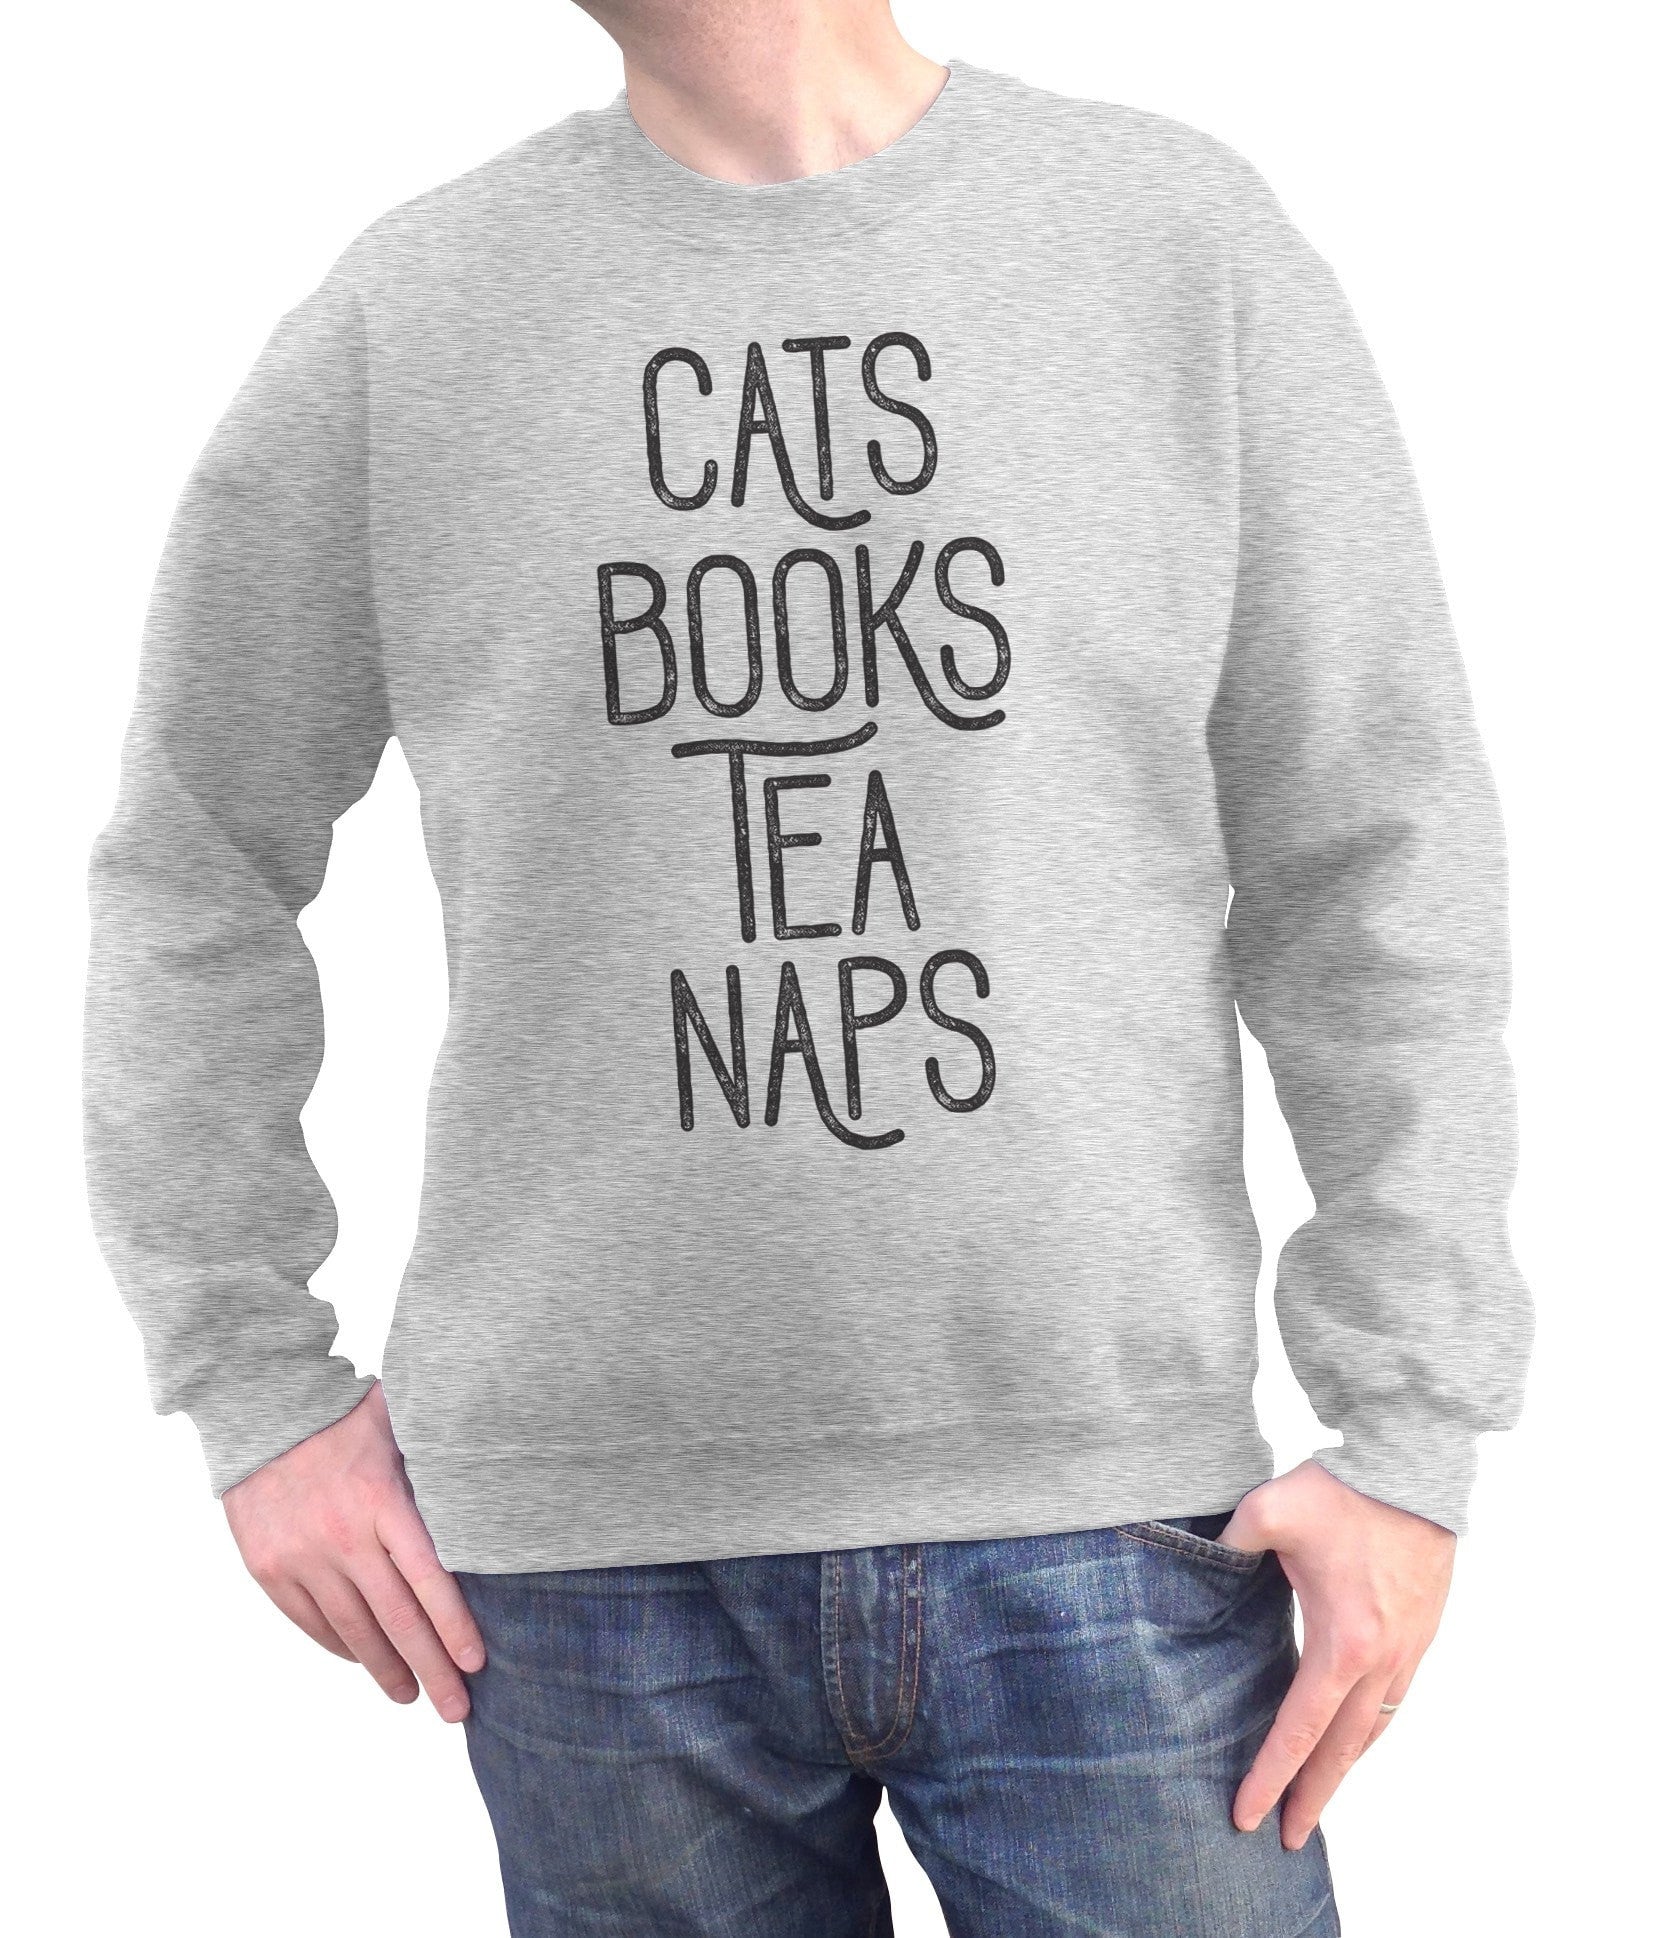 Unisex Cats Book Tea Naps Sweatshirt